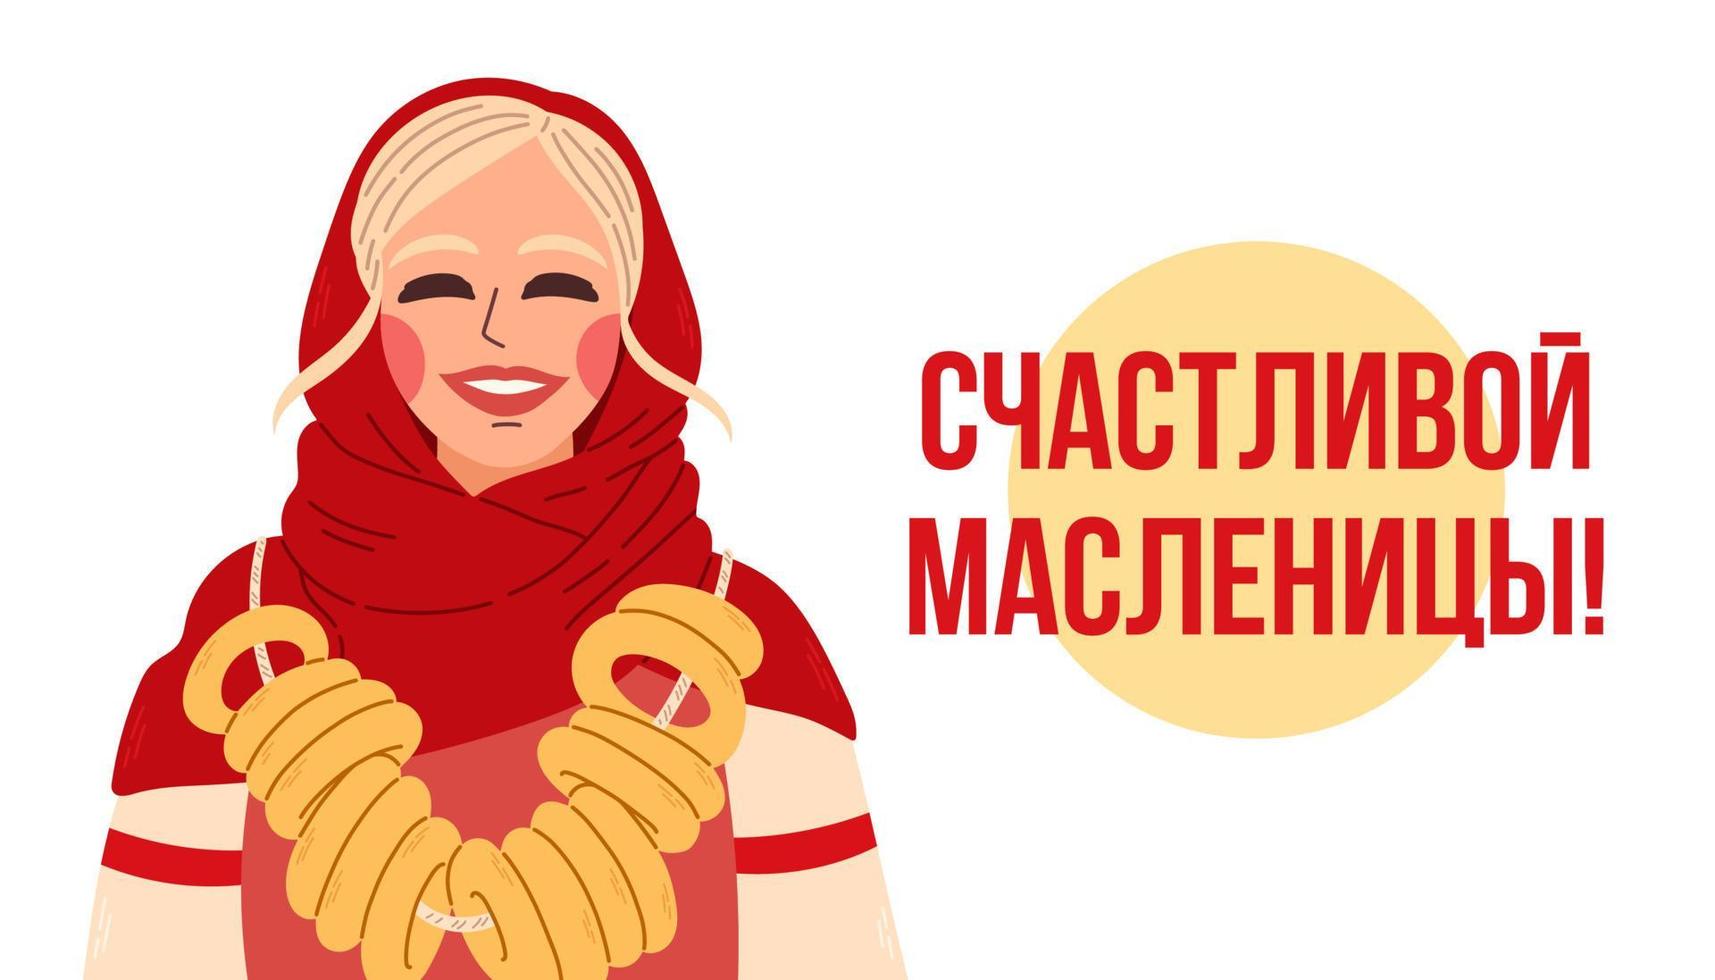 gelukkig maslenitsa. Russisch vakantie carnaval vector concept. Russisch vertaling gelukkig stuk of maslenitsa.